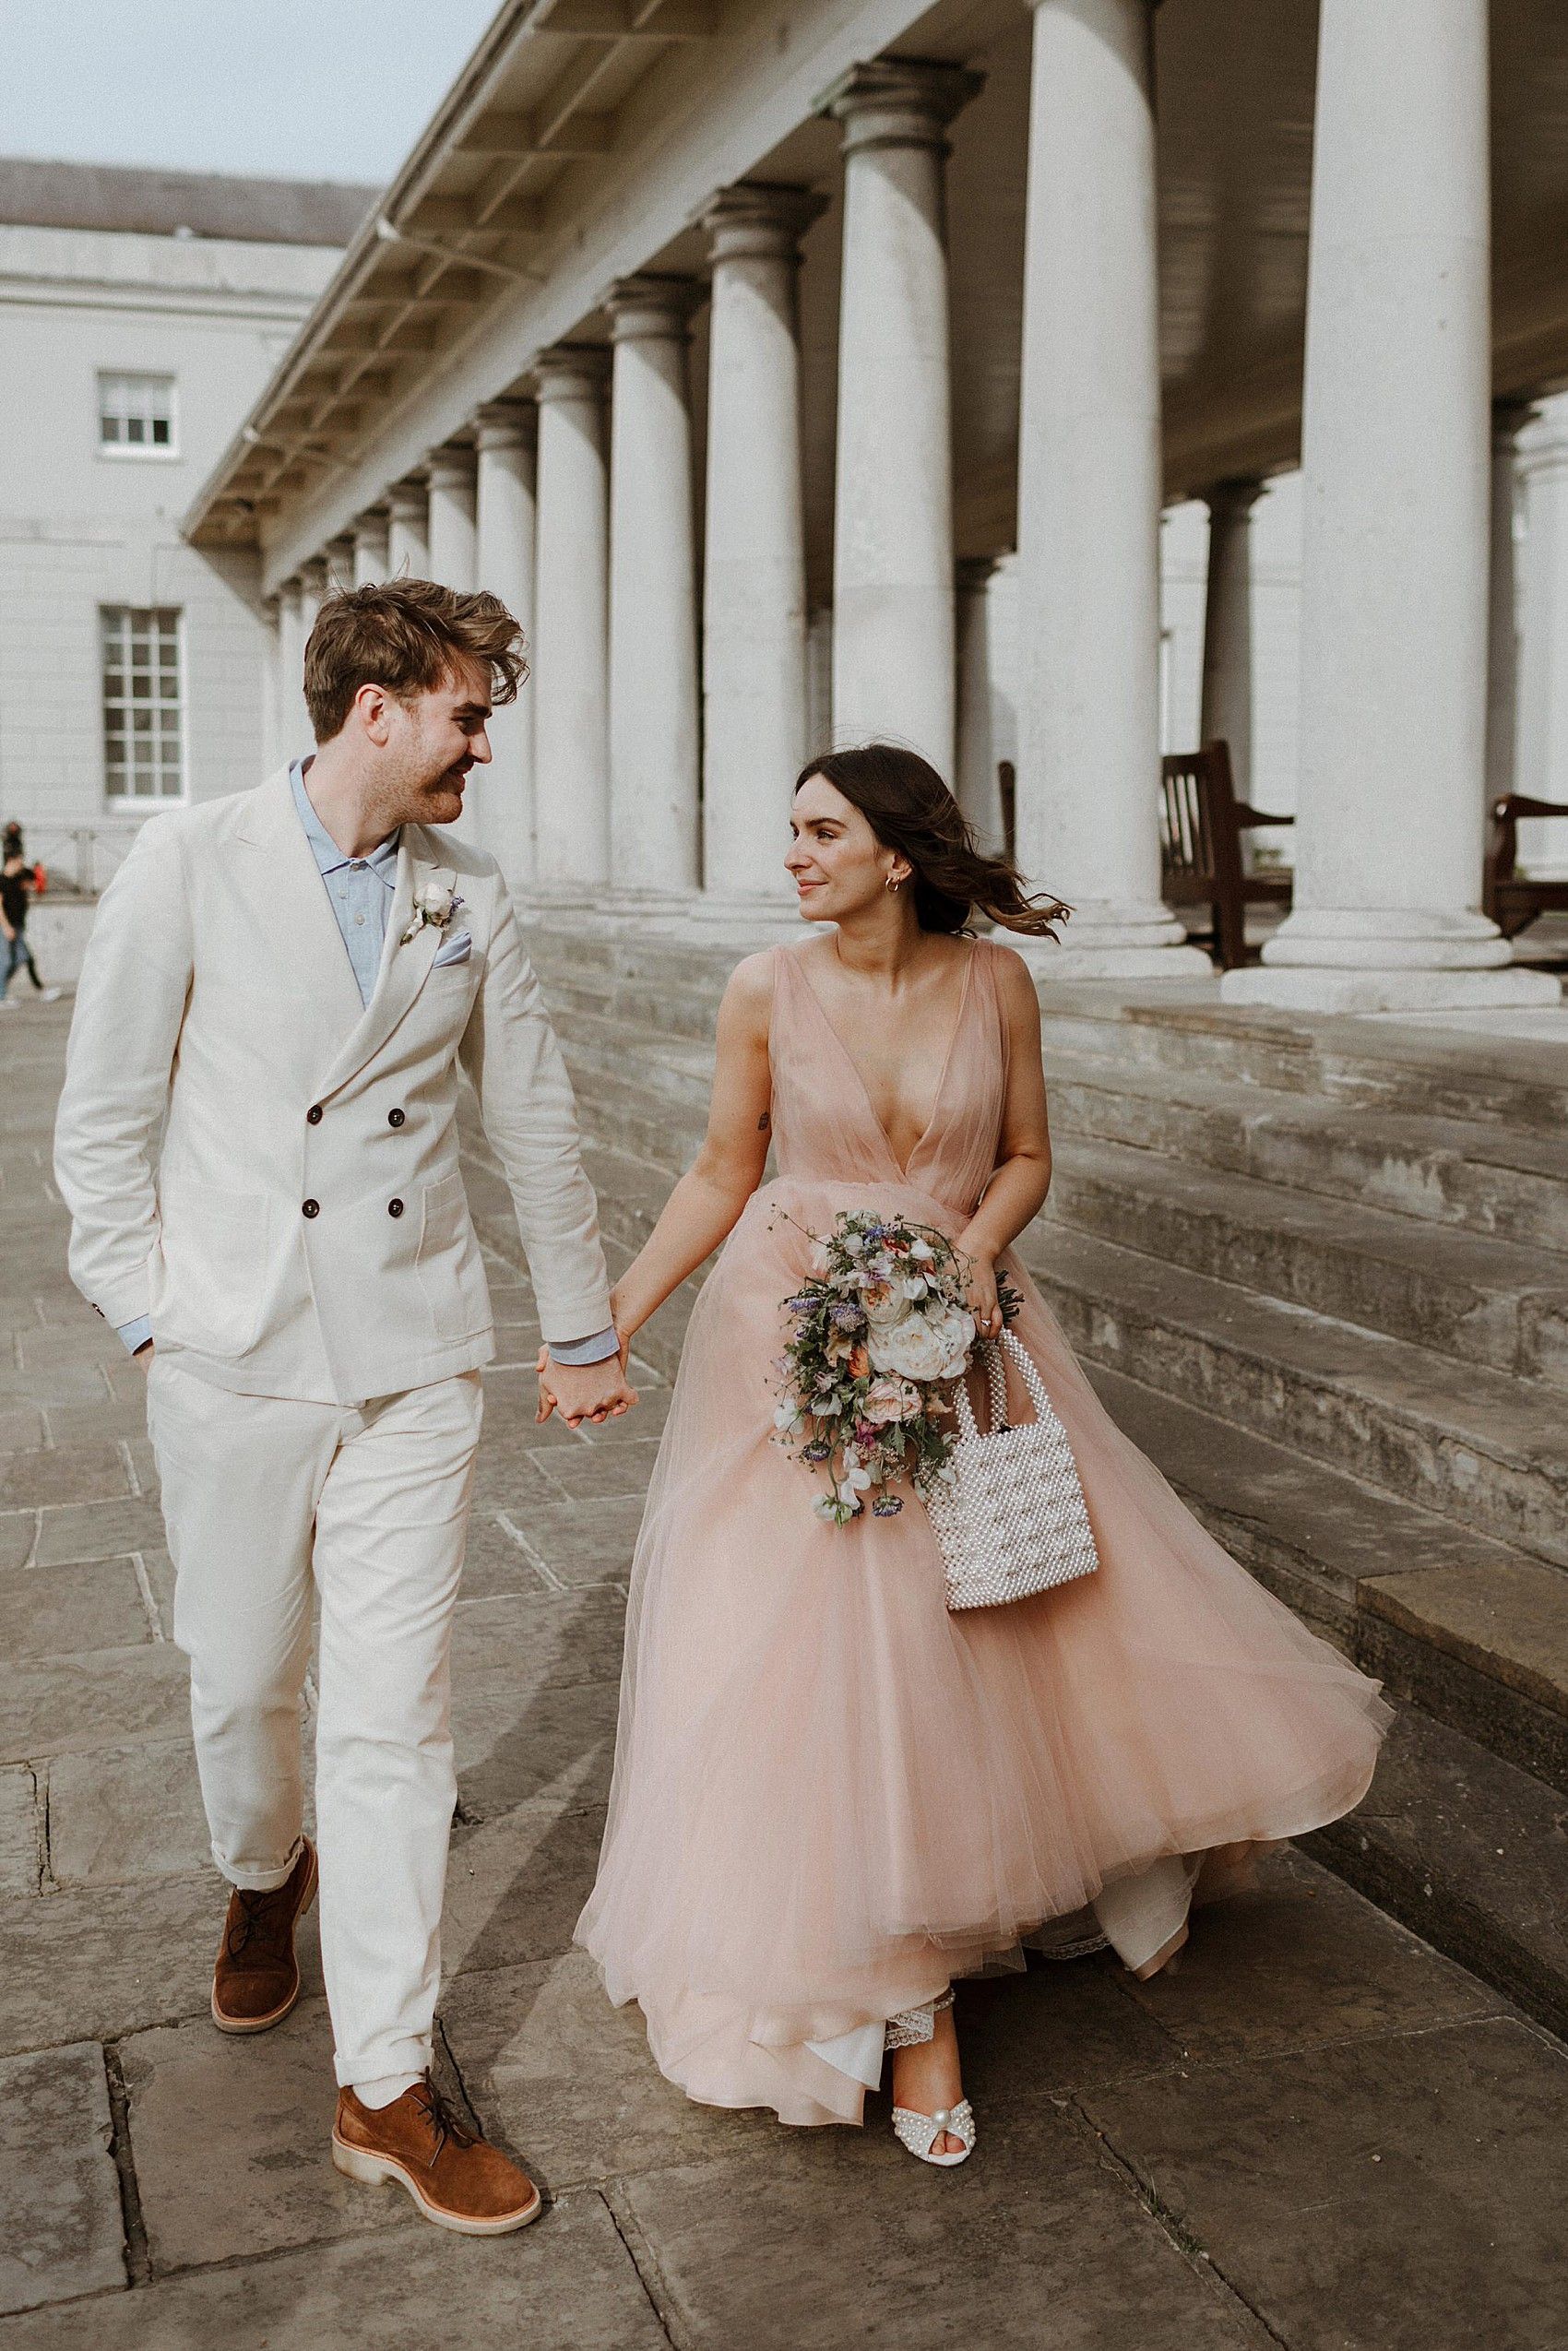 Liv Purvis + Joe Galvin's Wedding at Queens House, Greenwich: A Naeem Khan Pink Tulle Dress + Jimmy -   17 wedding Couple dress ideas